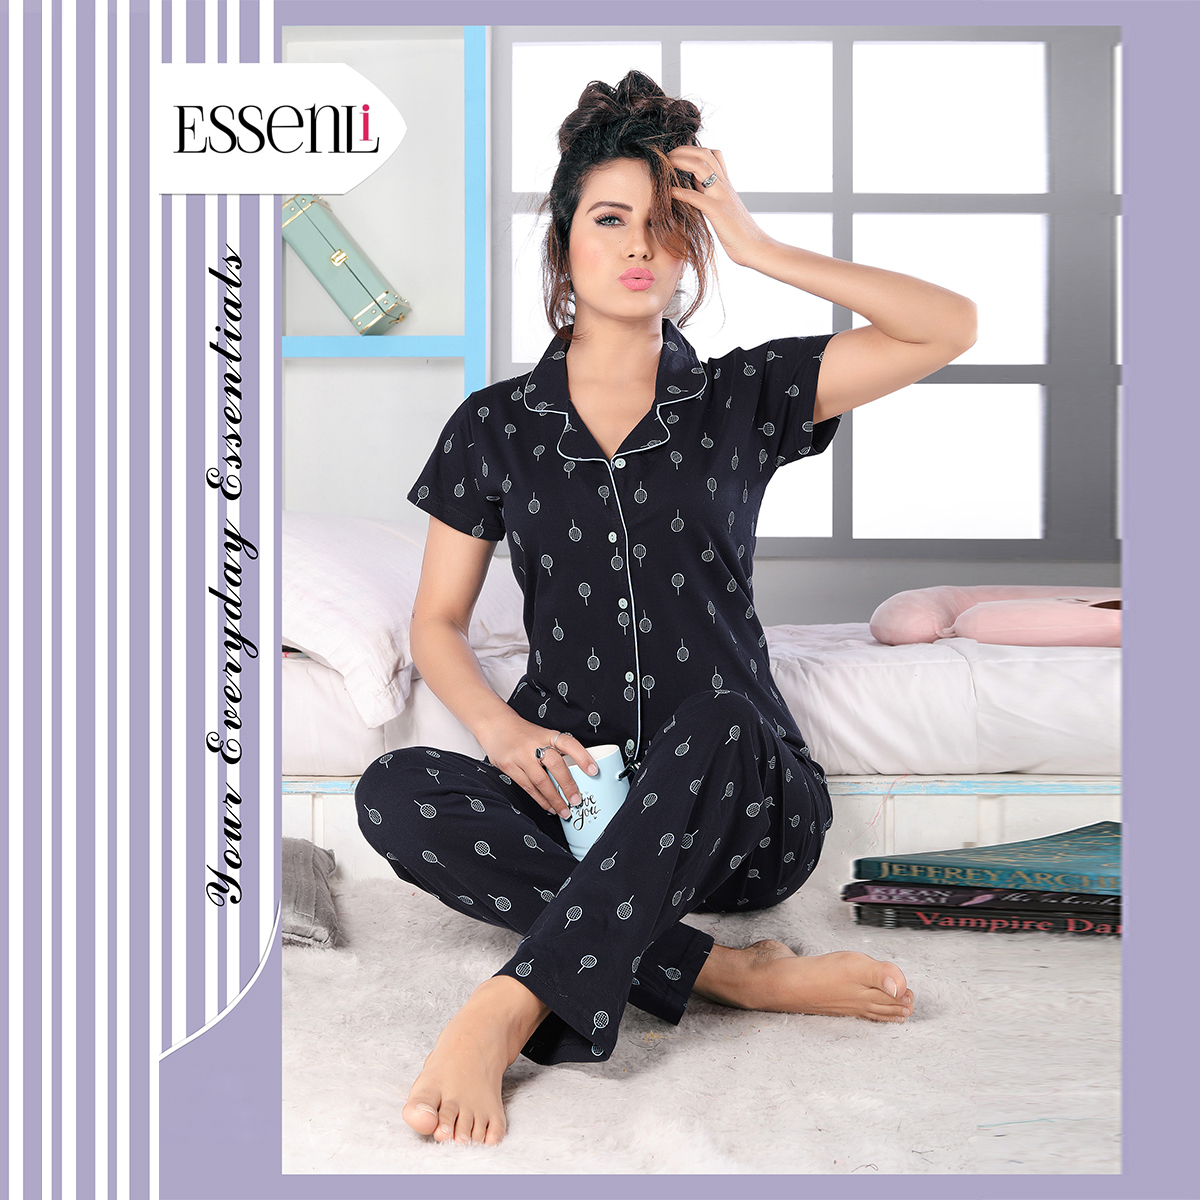 Essenli Cotton Knitted Sleep Wear for Women - Black